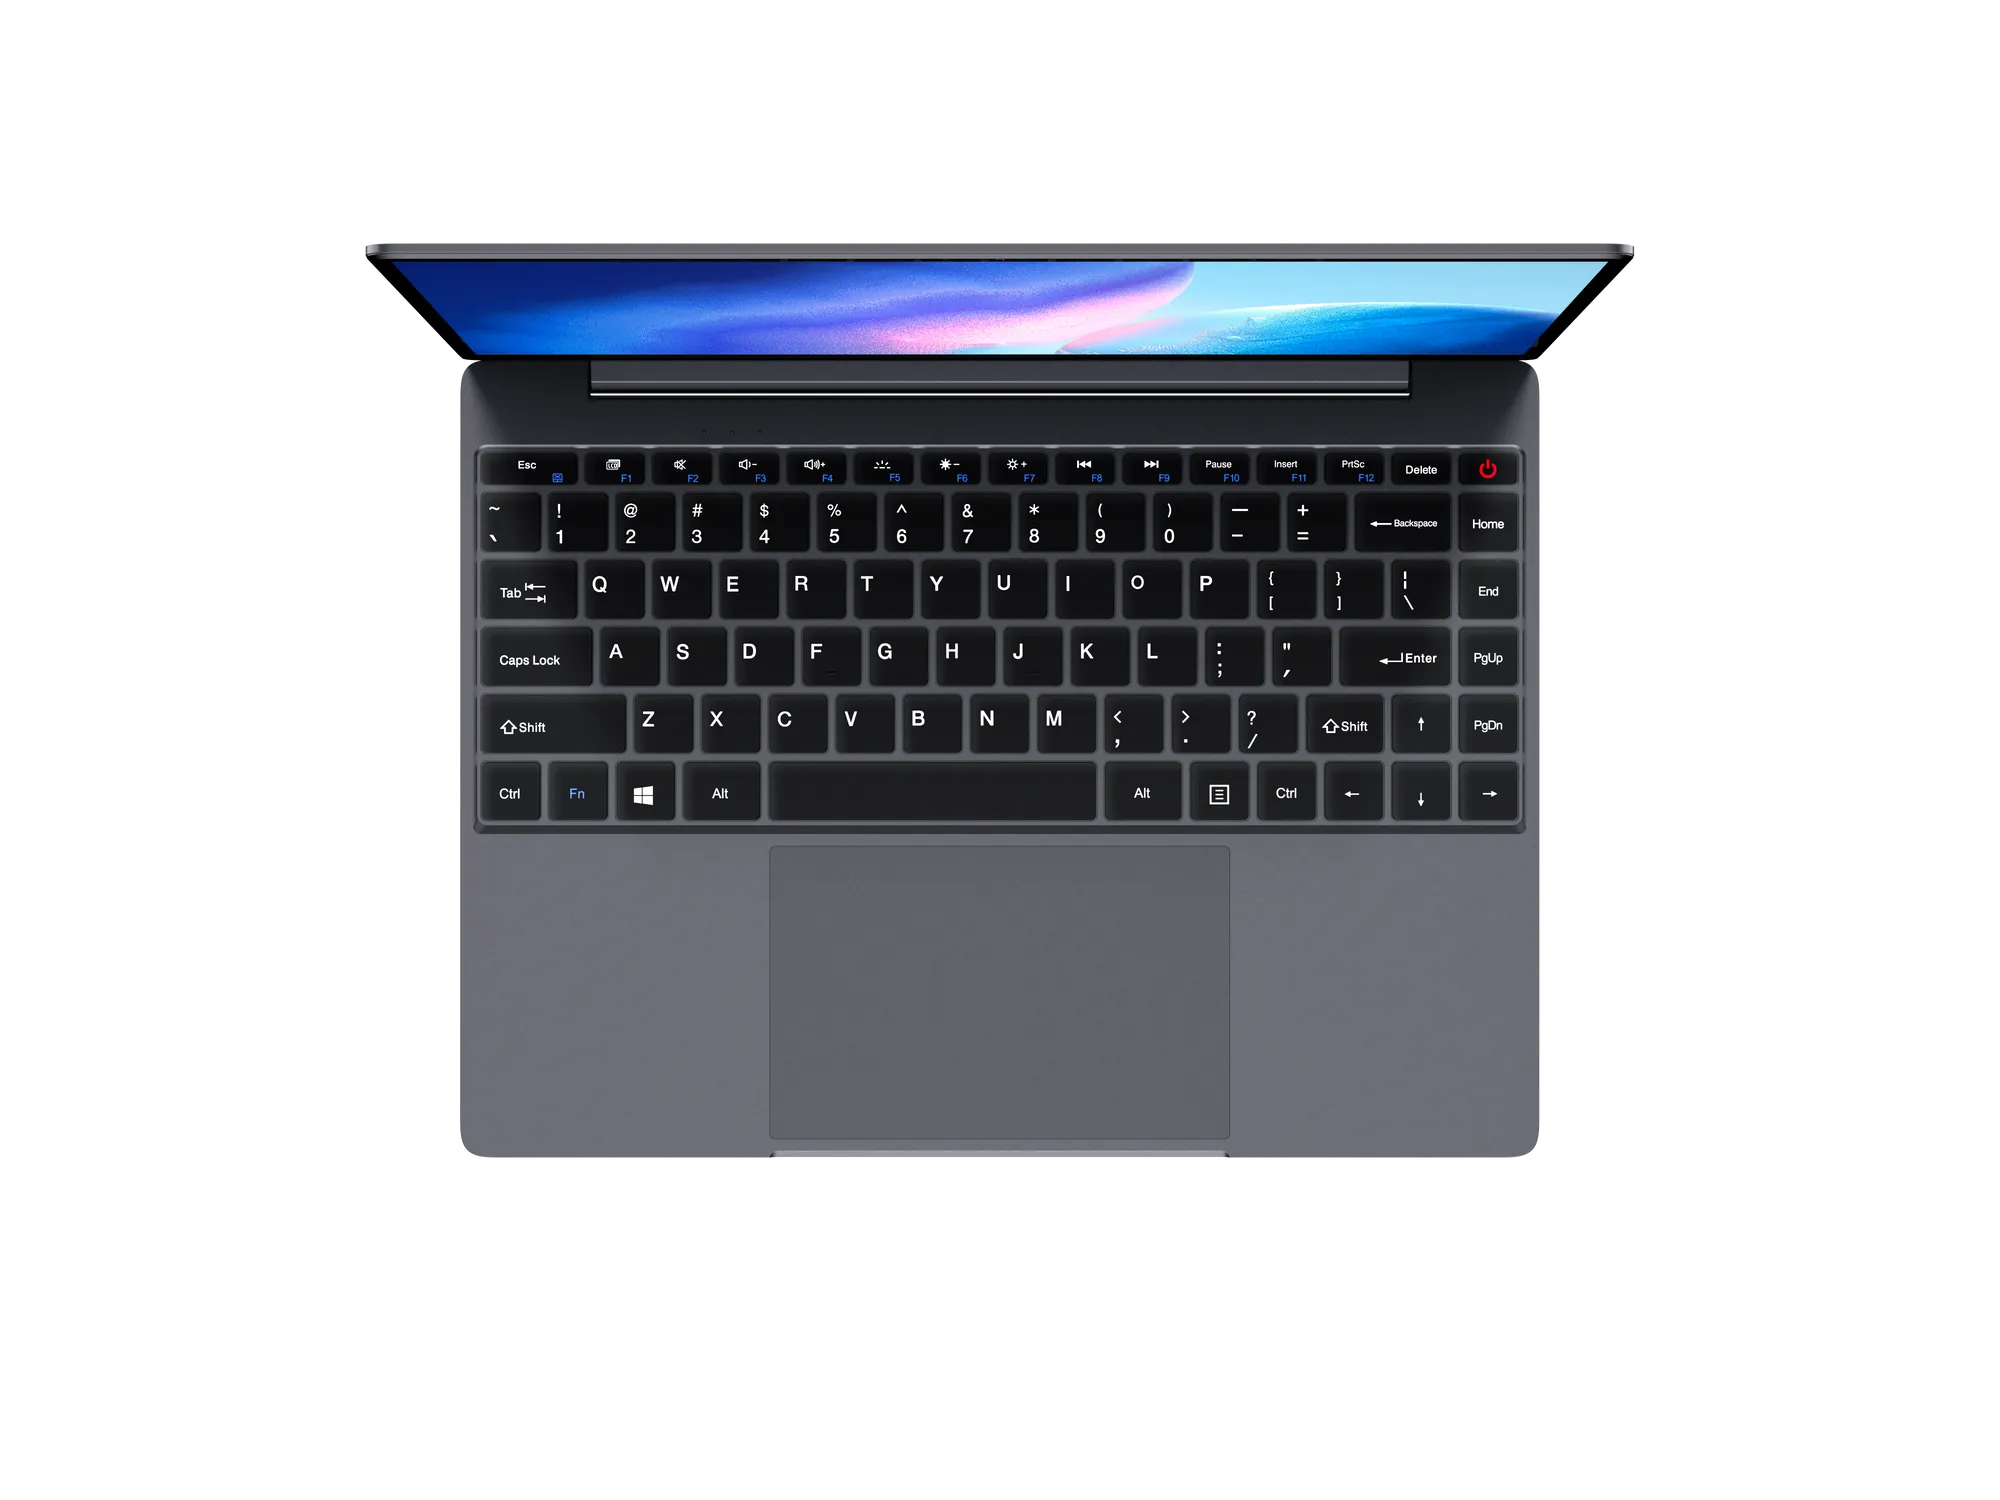 Chuwi CoreBook X 筆記型電腦 (14吋 / WQHD / i3-1215U /i5-12450H /16GB LPDDR4 RAM / 512GB SSD / WiFi 6 / Windows 11 Home) - 2160 x 1440  2年保養